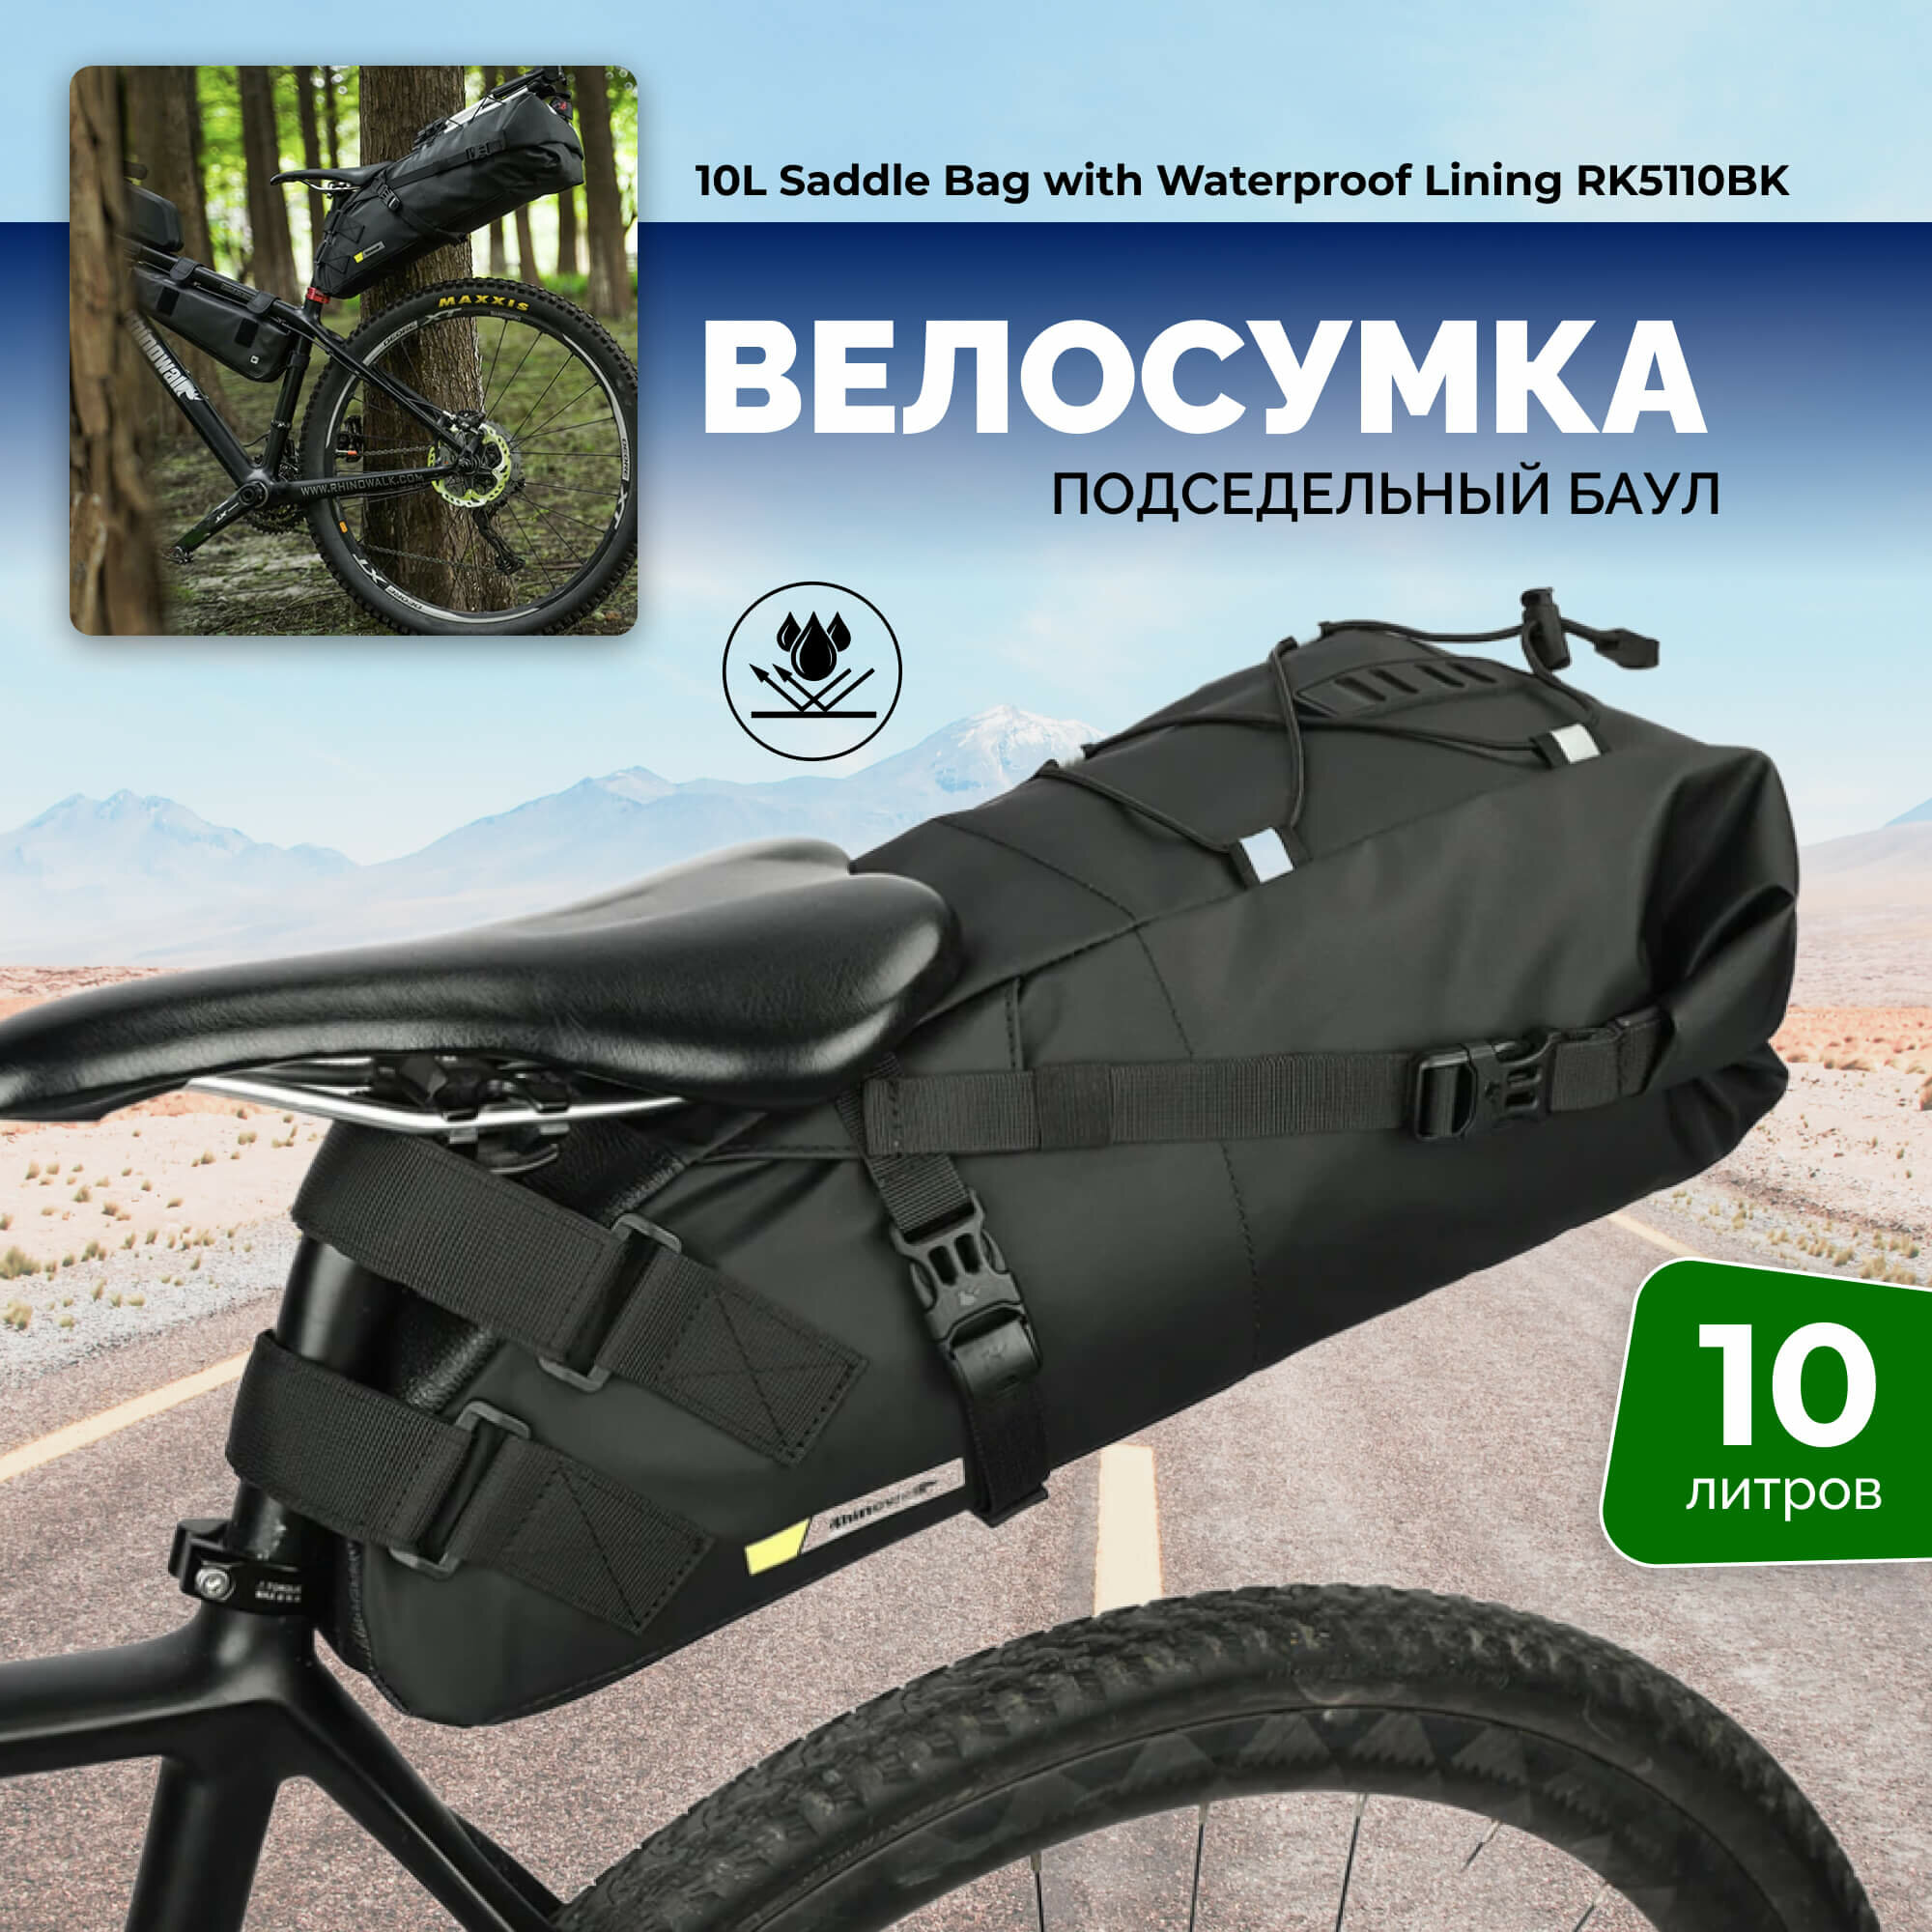 Водонепроницаемый подседельный баул для байкпакинга 10л/сумка для велосипеда под седло Rhinowalk RK5110